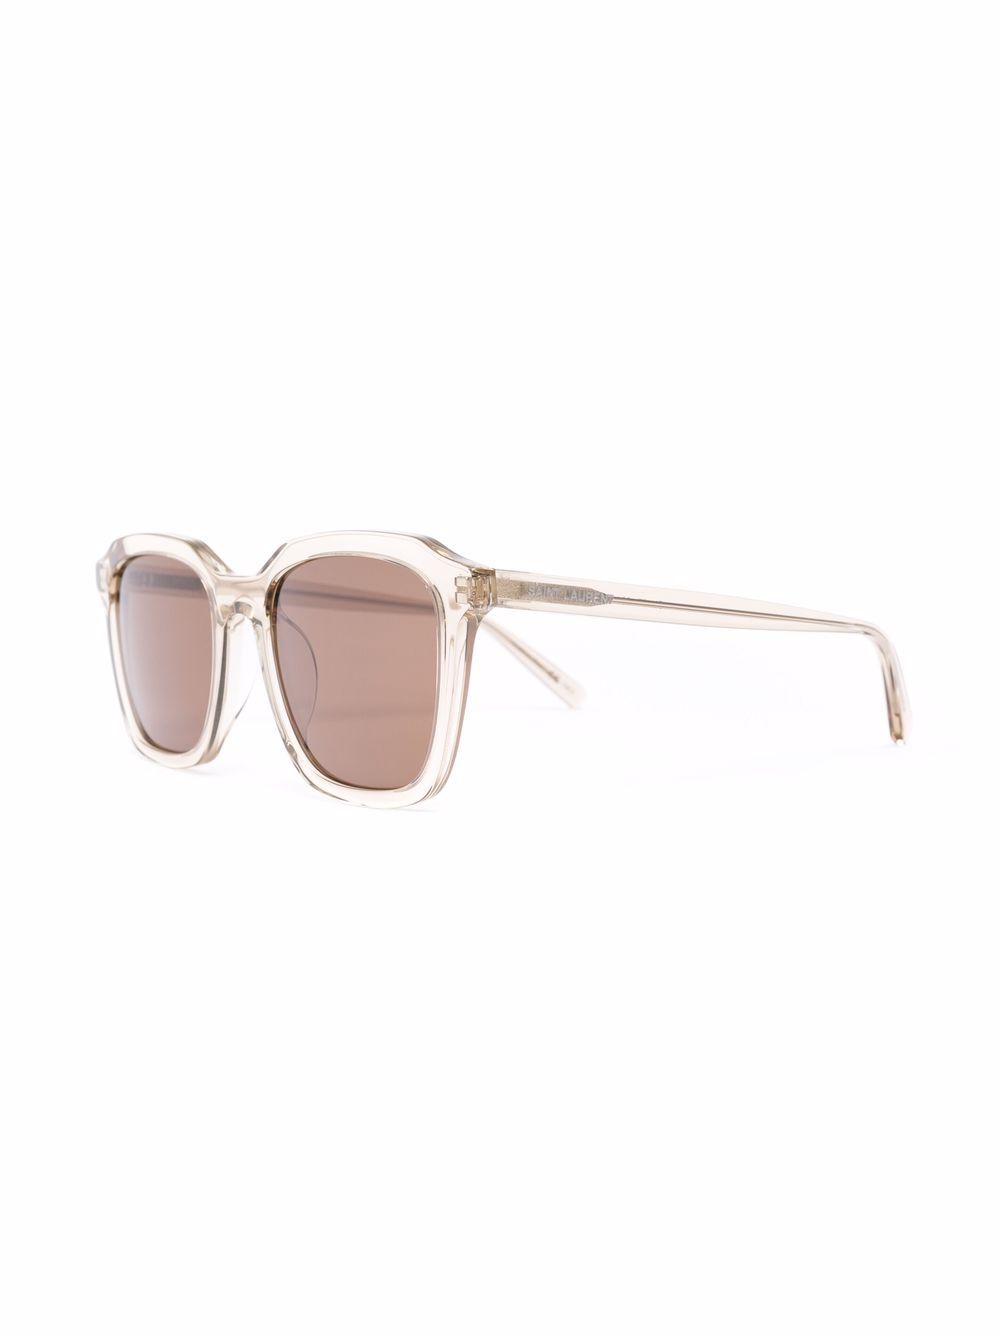 фото Saint laurent eyewear солнцезащитные очки sl 457 в квадратной оправе